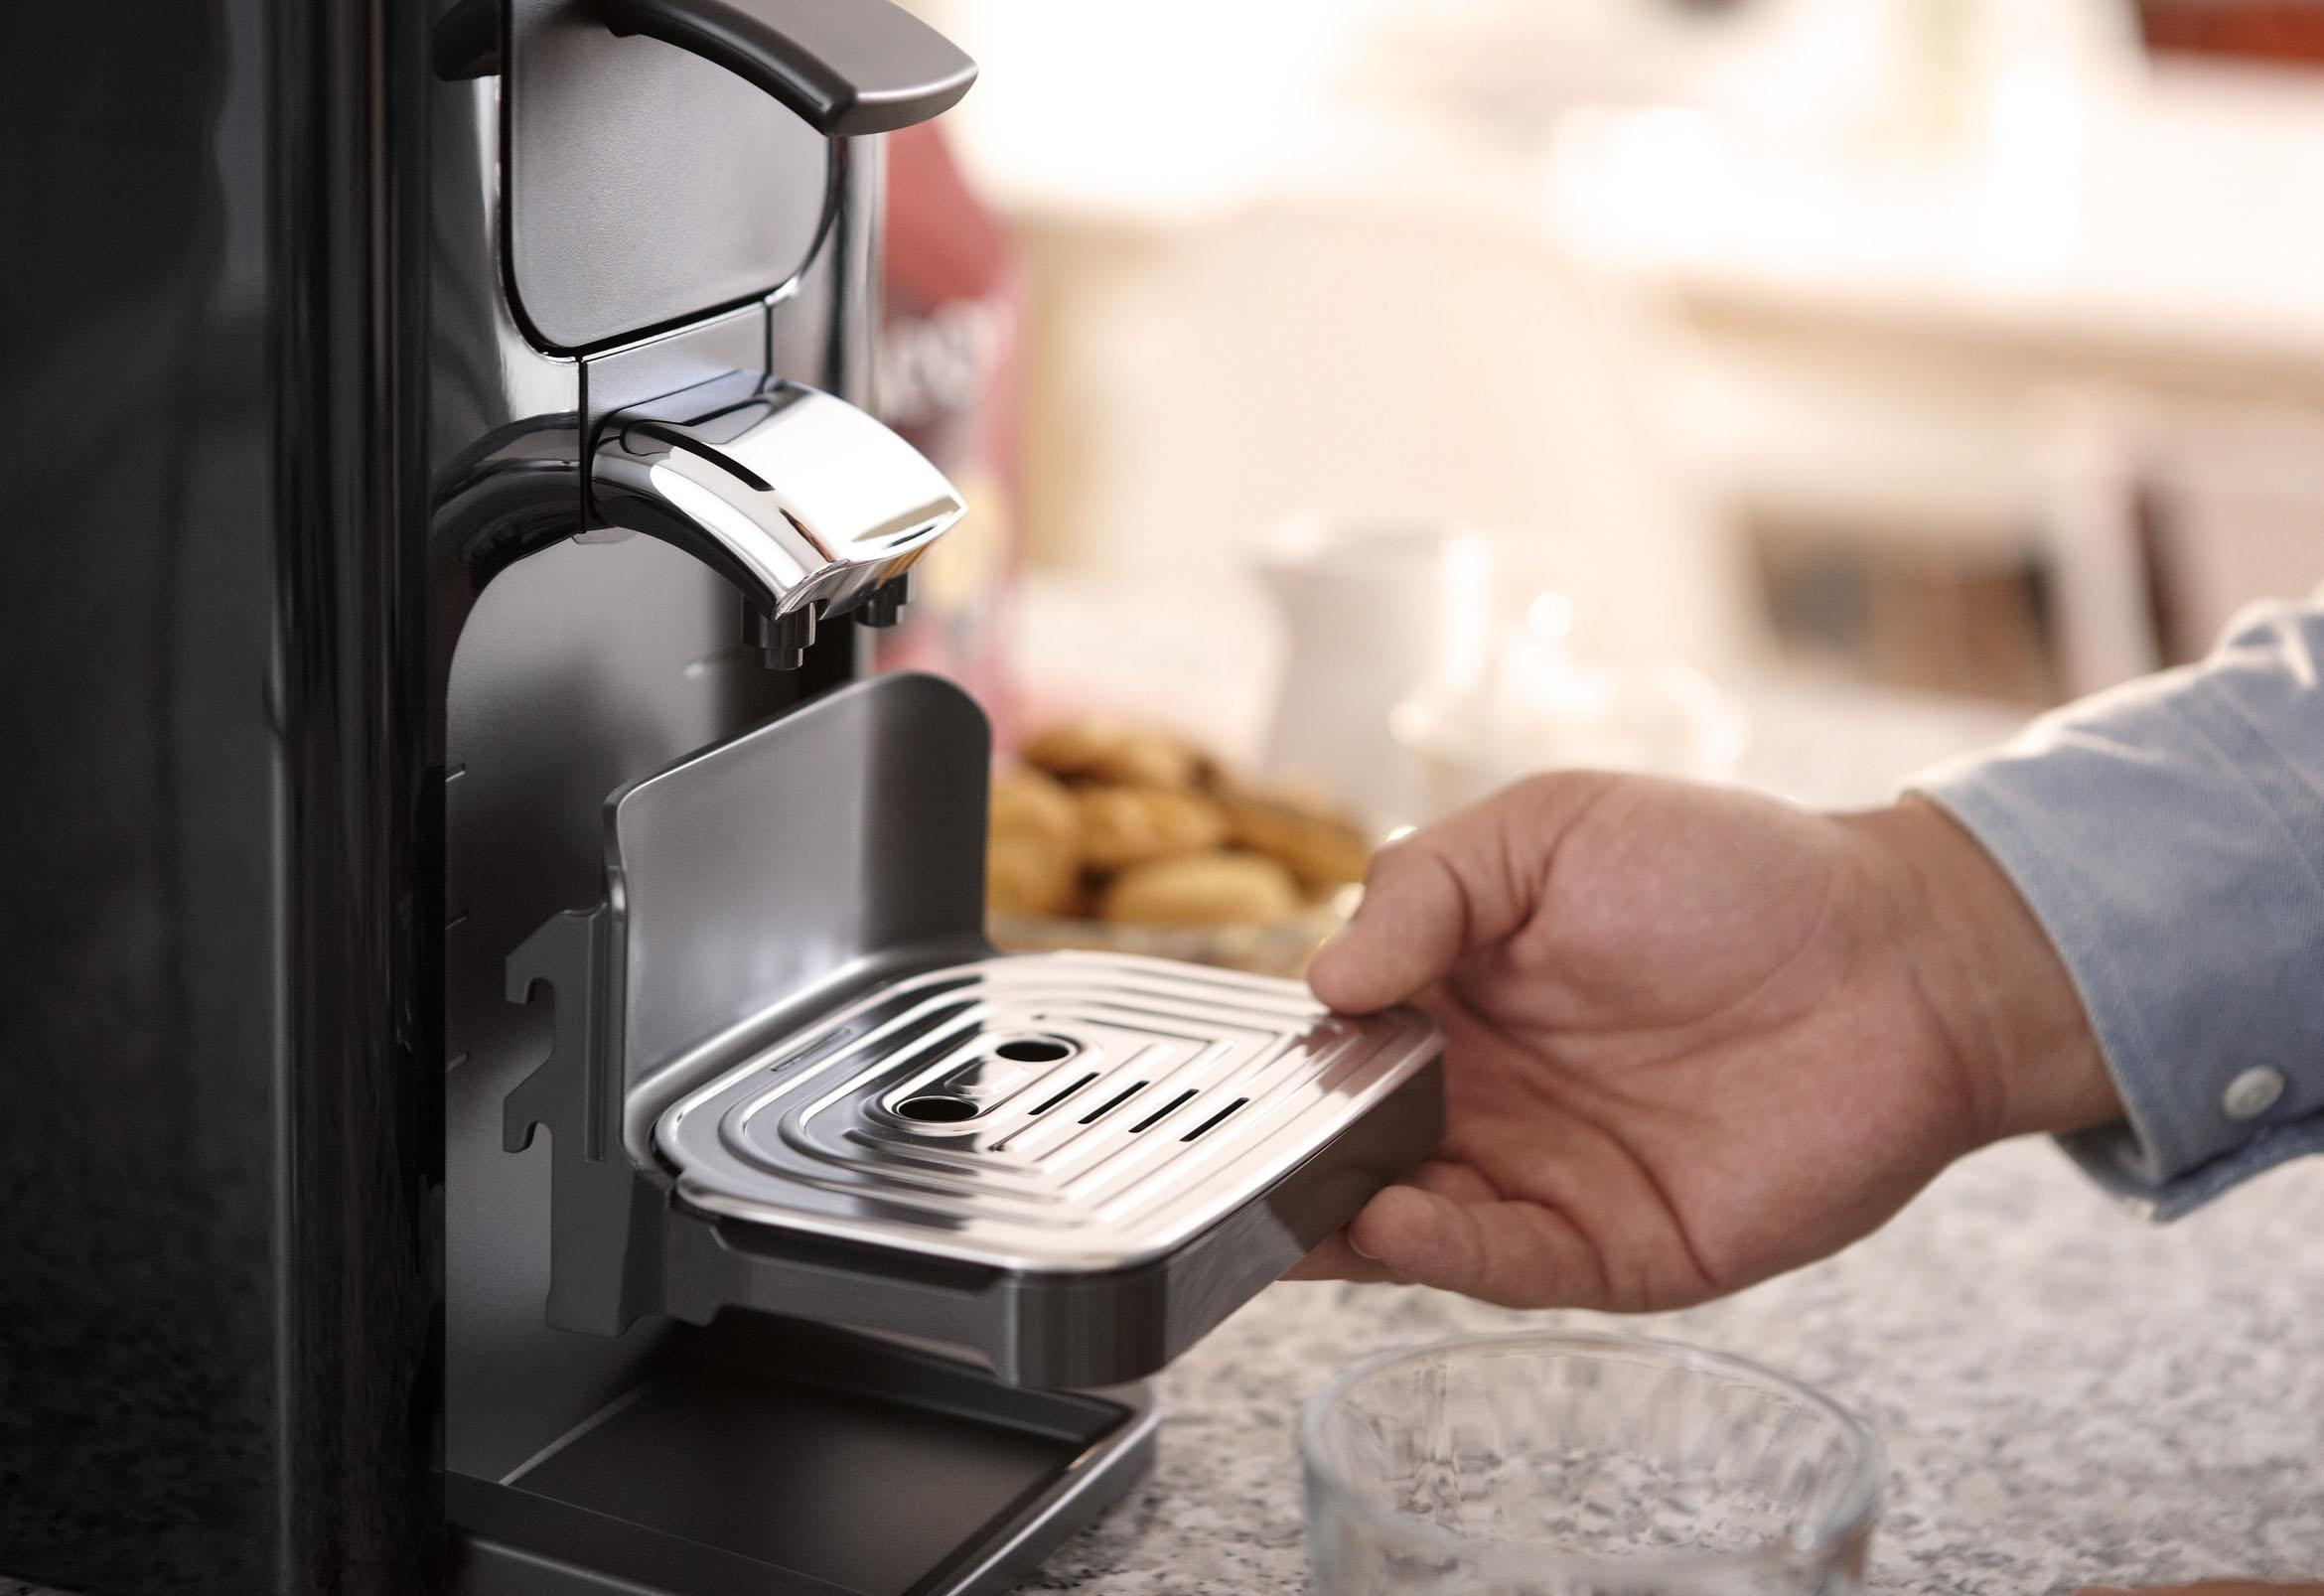 im Online Kaffeepadmaschine Shop jetzt Quadrante Gratis HD7865/60«, UVP inkl. 23,90 im »SENSEO® von Philips -Zugaben Senseo OTTO Wert